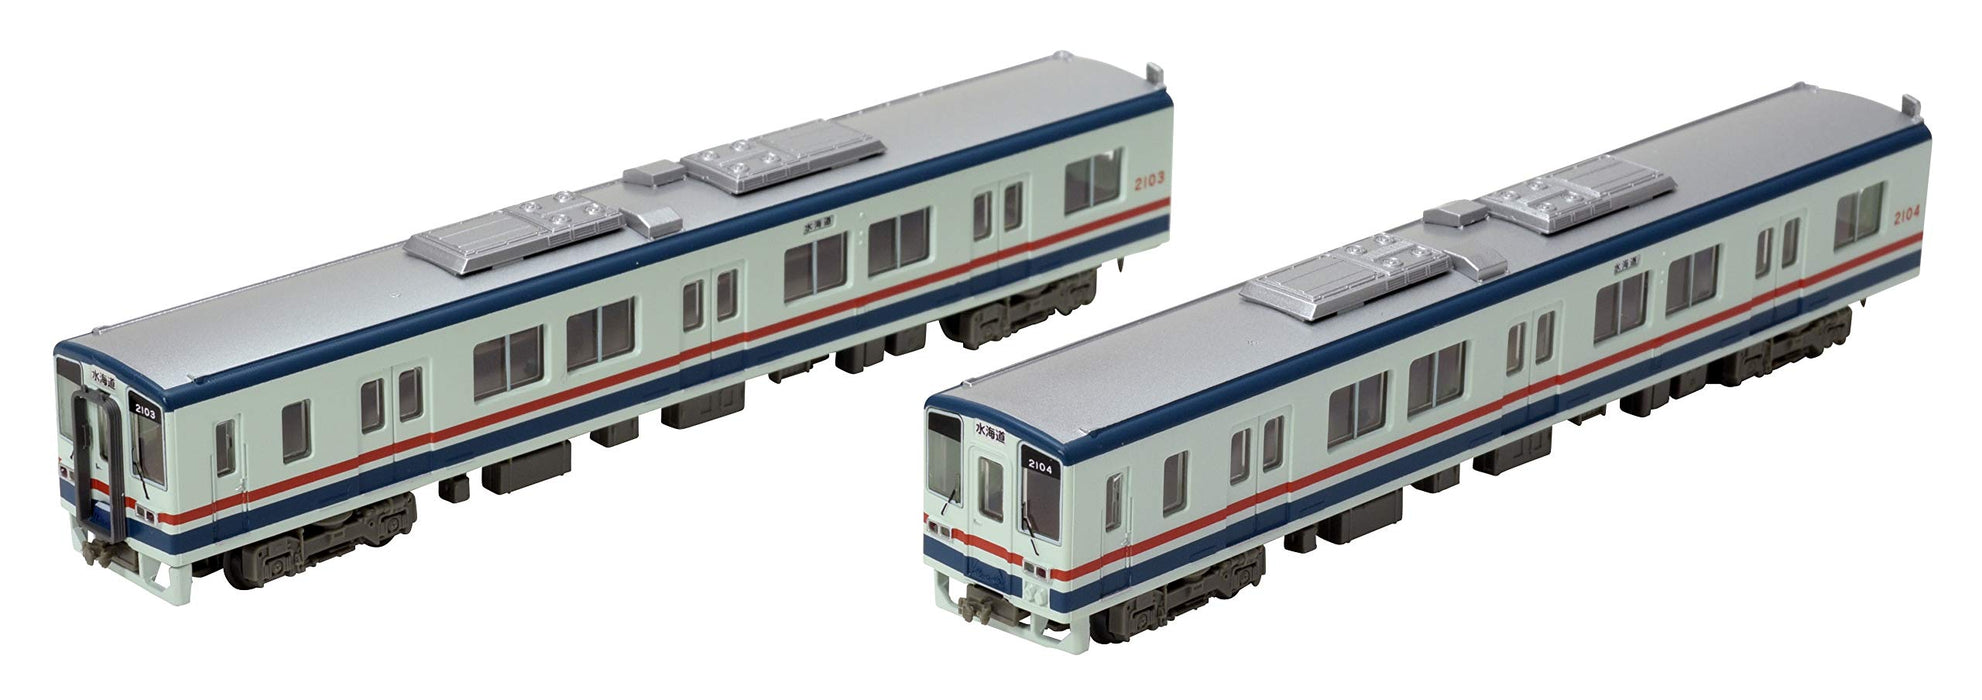 TOMYTEC Kanto Railway Typ Kiha 2100 1. Ed. Neu lackiertes 2-Auto-Set Spur N